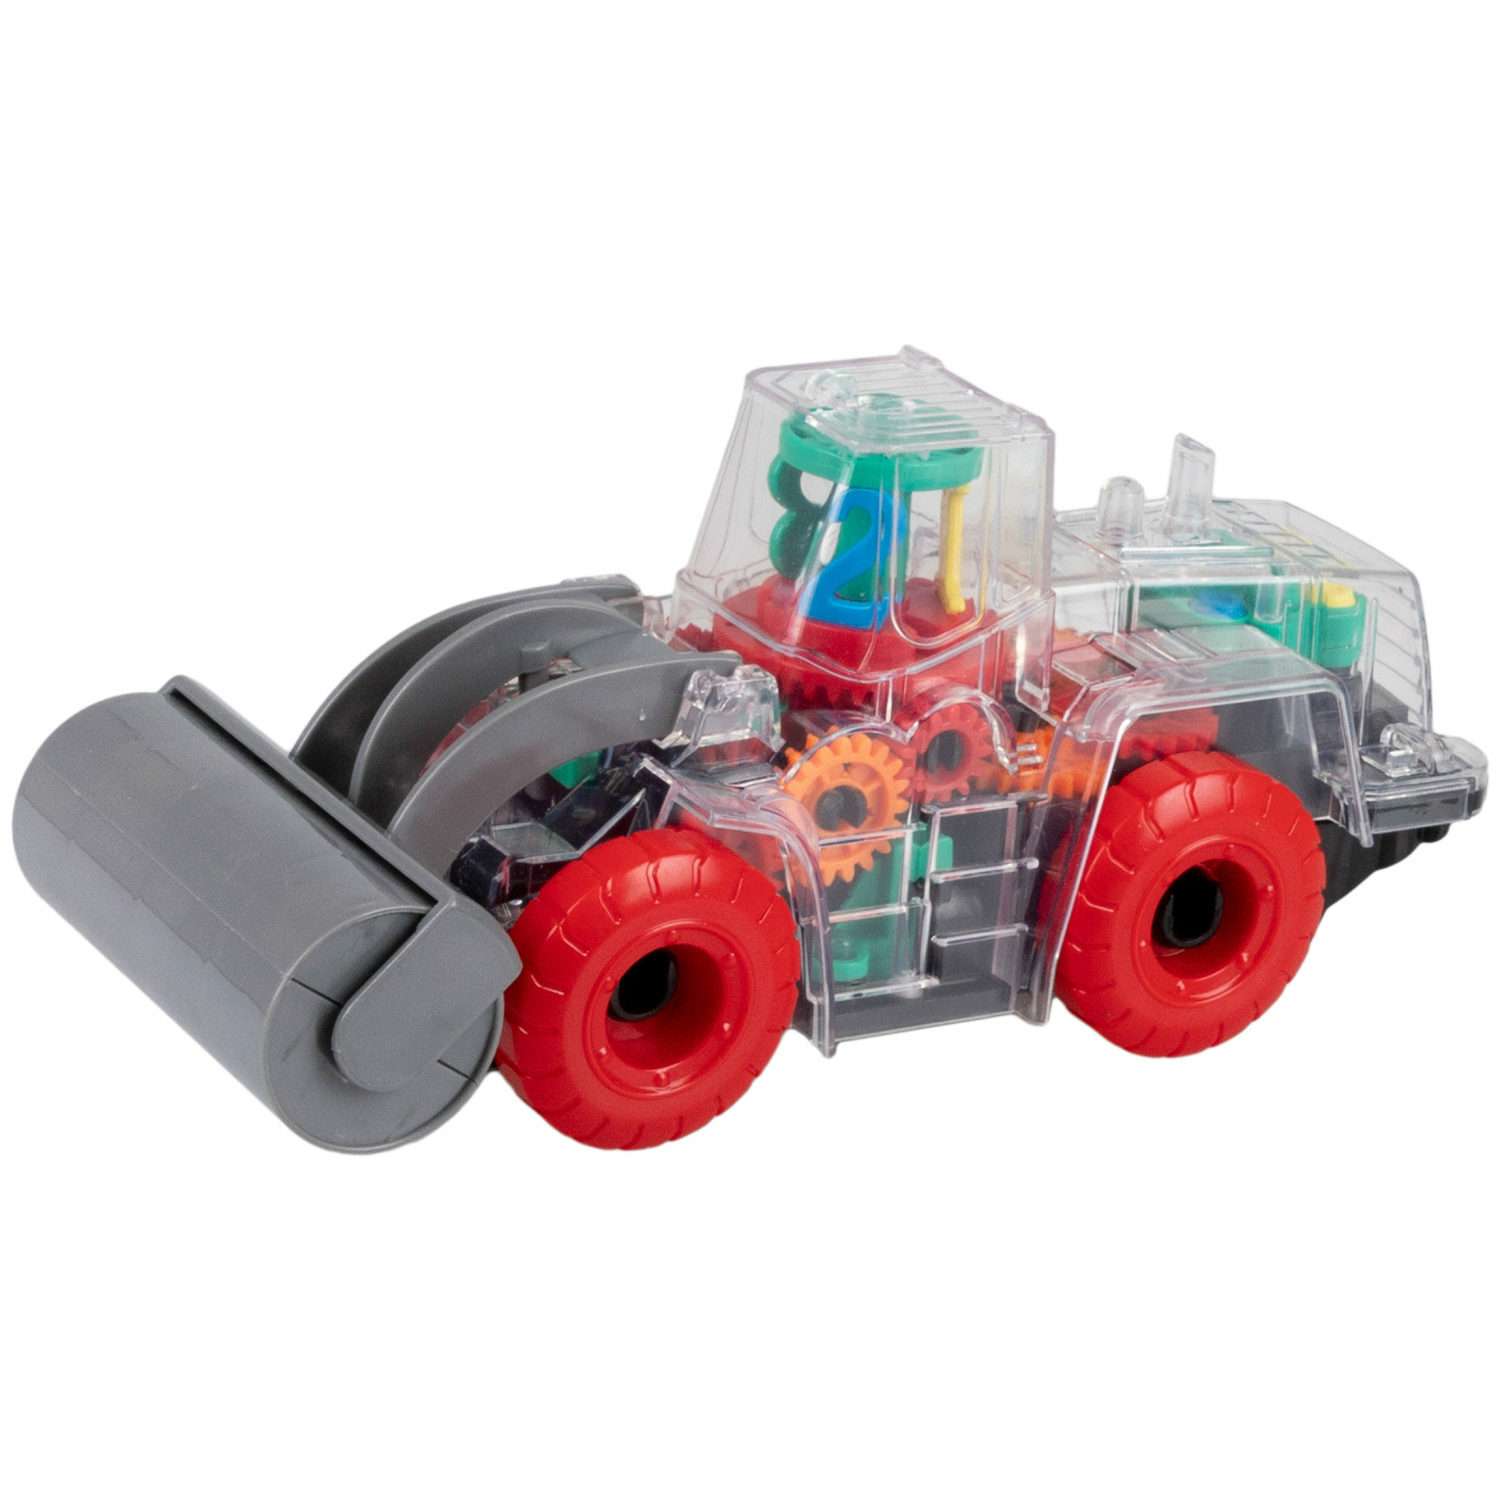 Интерактивная игрушка 1TOY Спецтехника Каток прозрачный с световыми и звуковыми эффектами красный с зеленым - фото 1